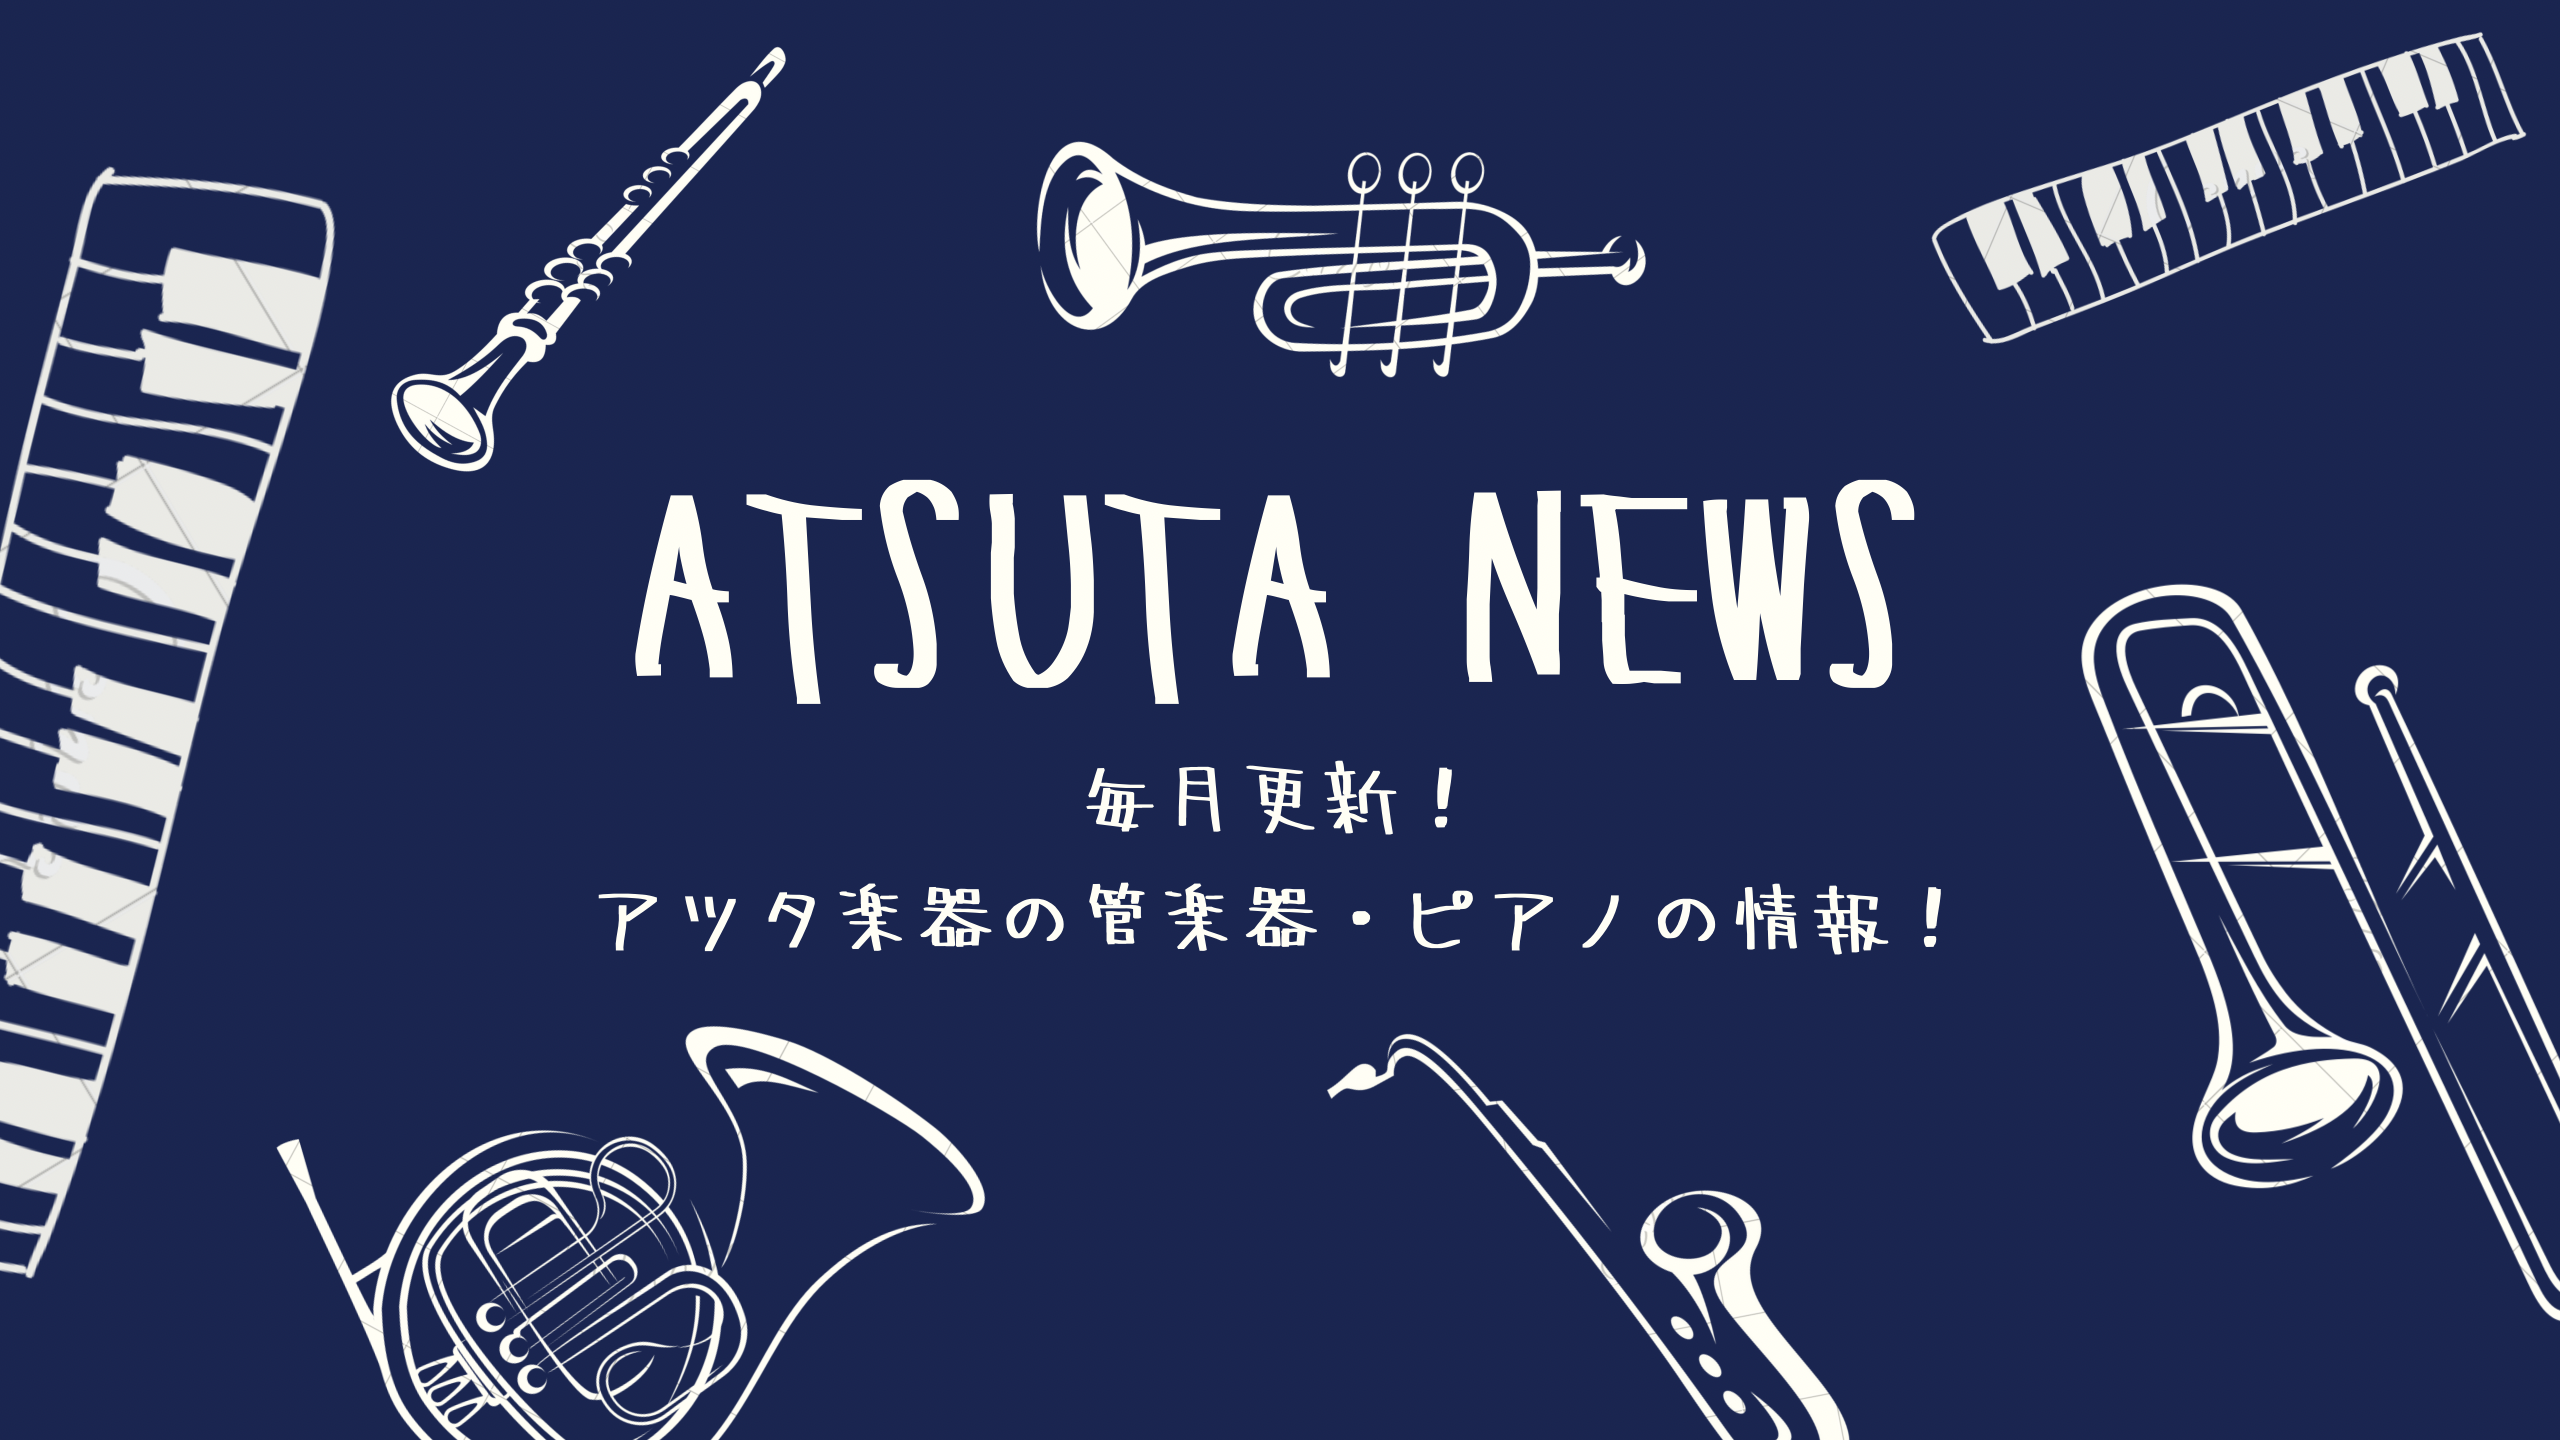 【ATSUTA NEWS Vol.2】